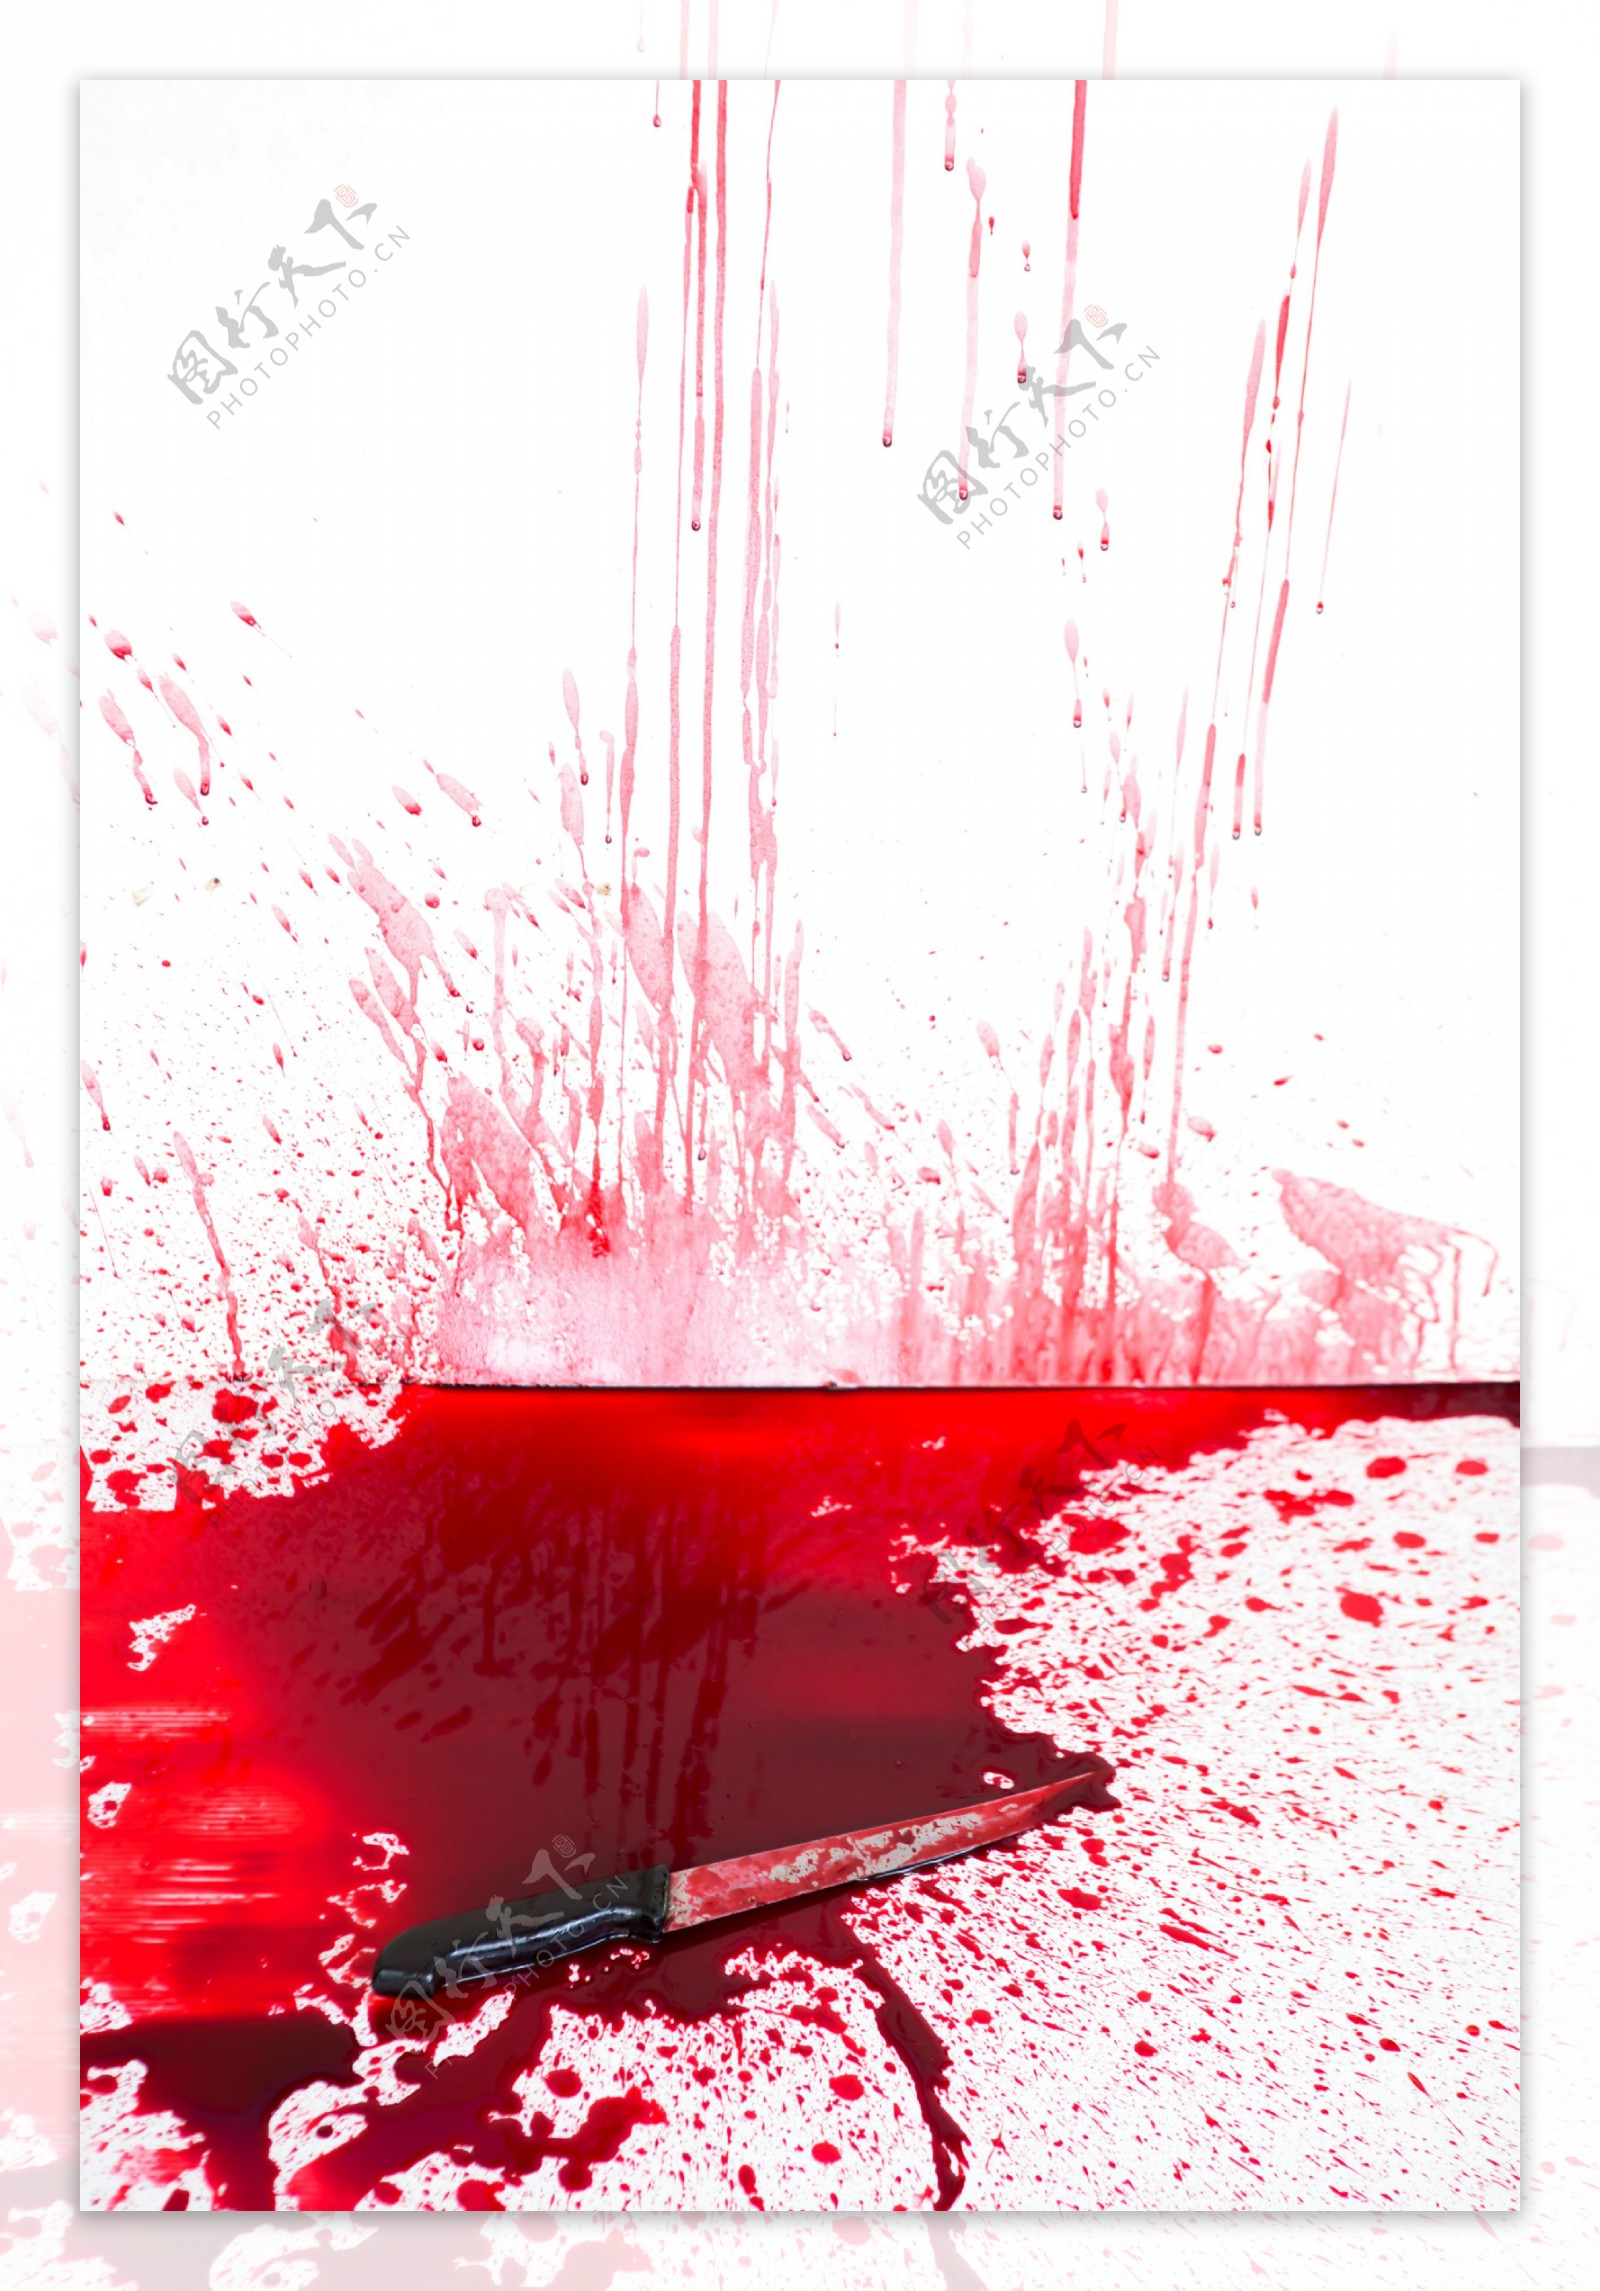 匕首与血迹素材图片